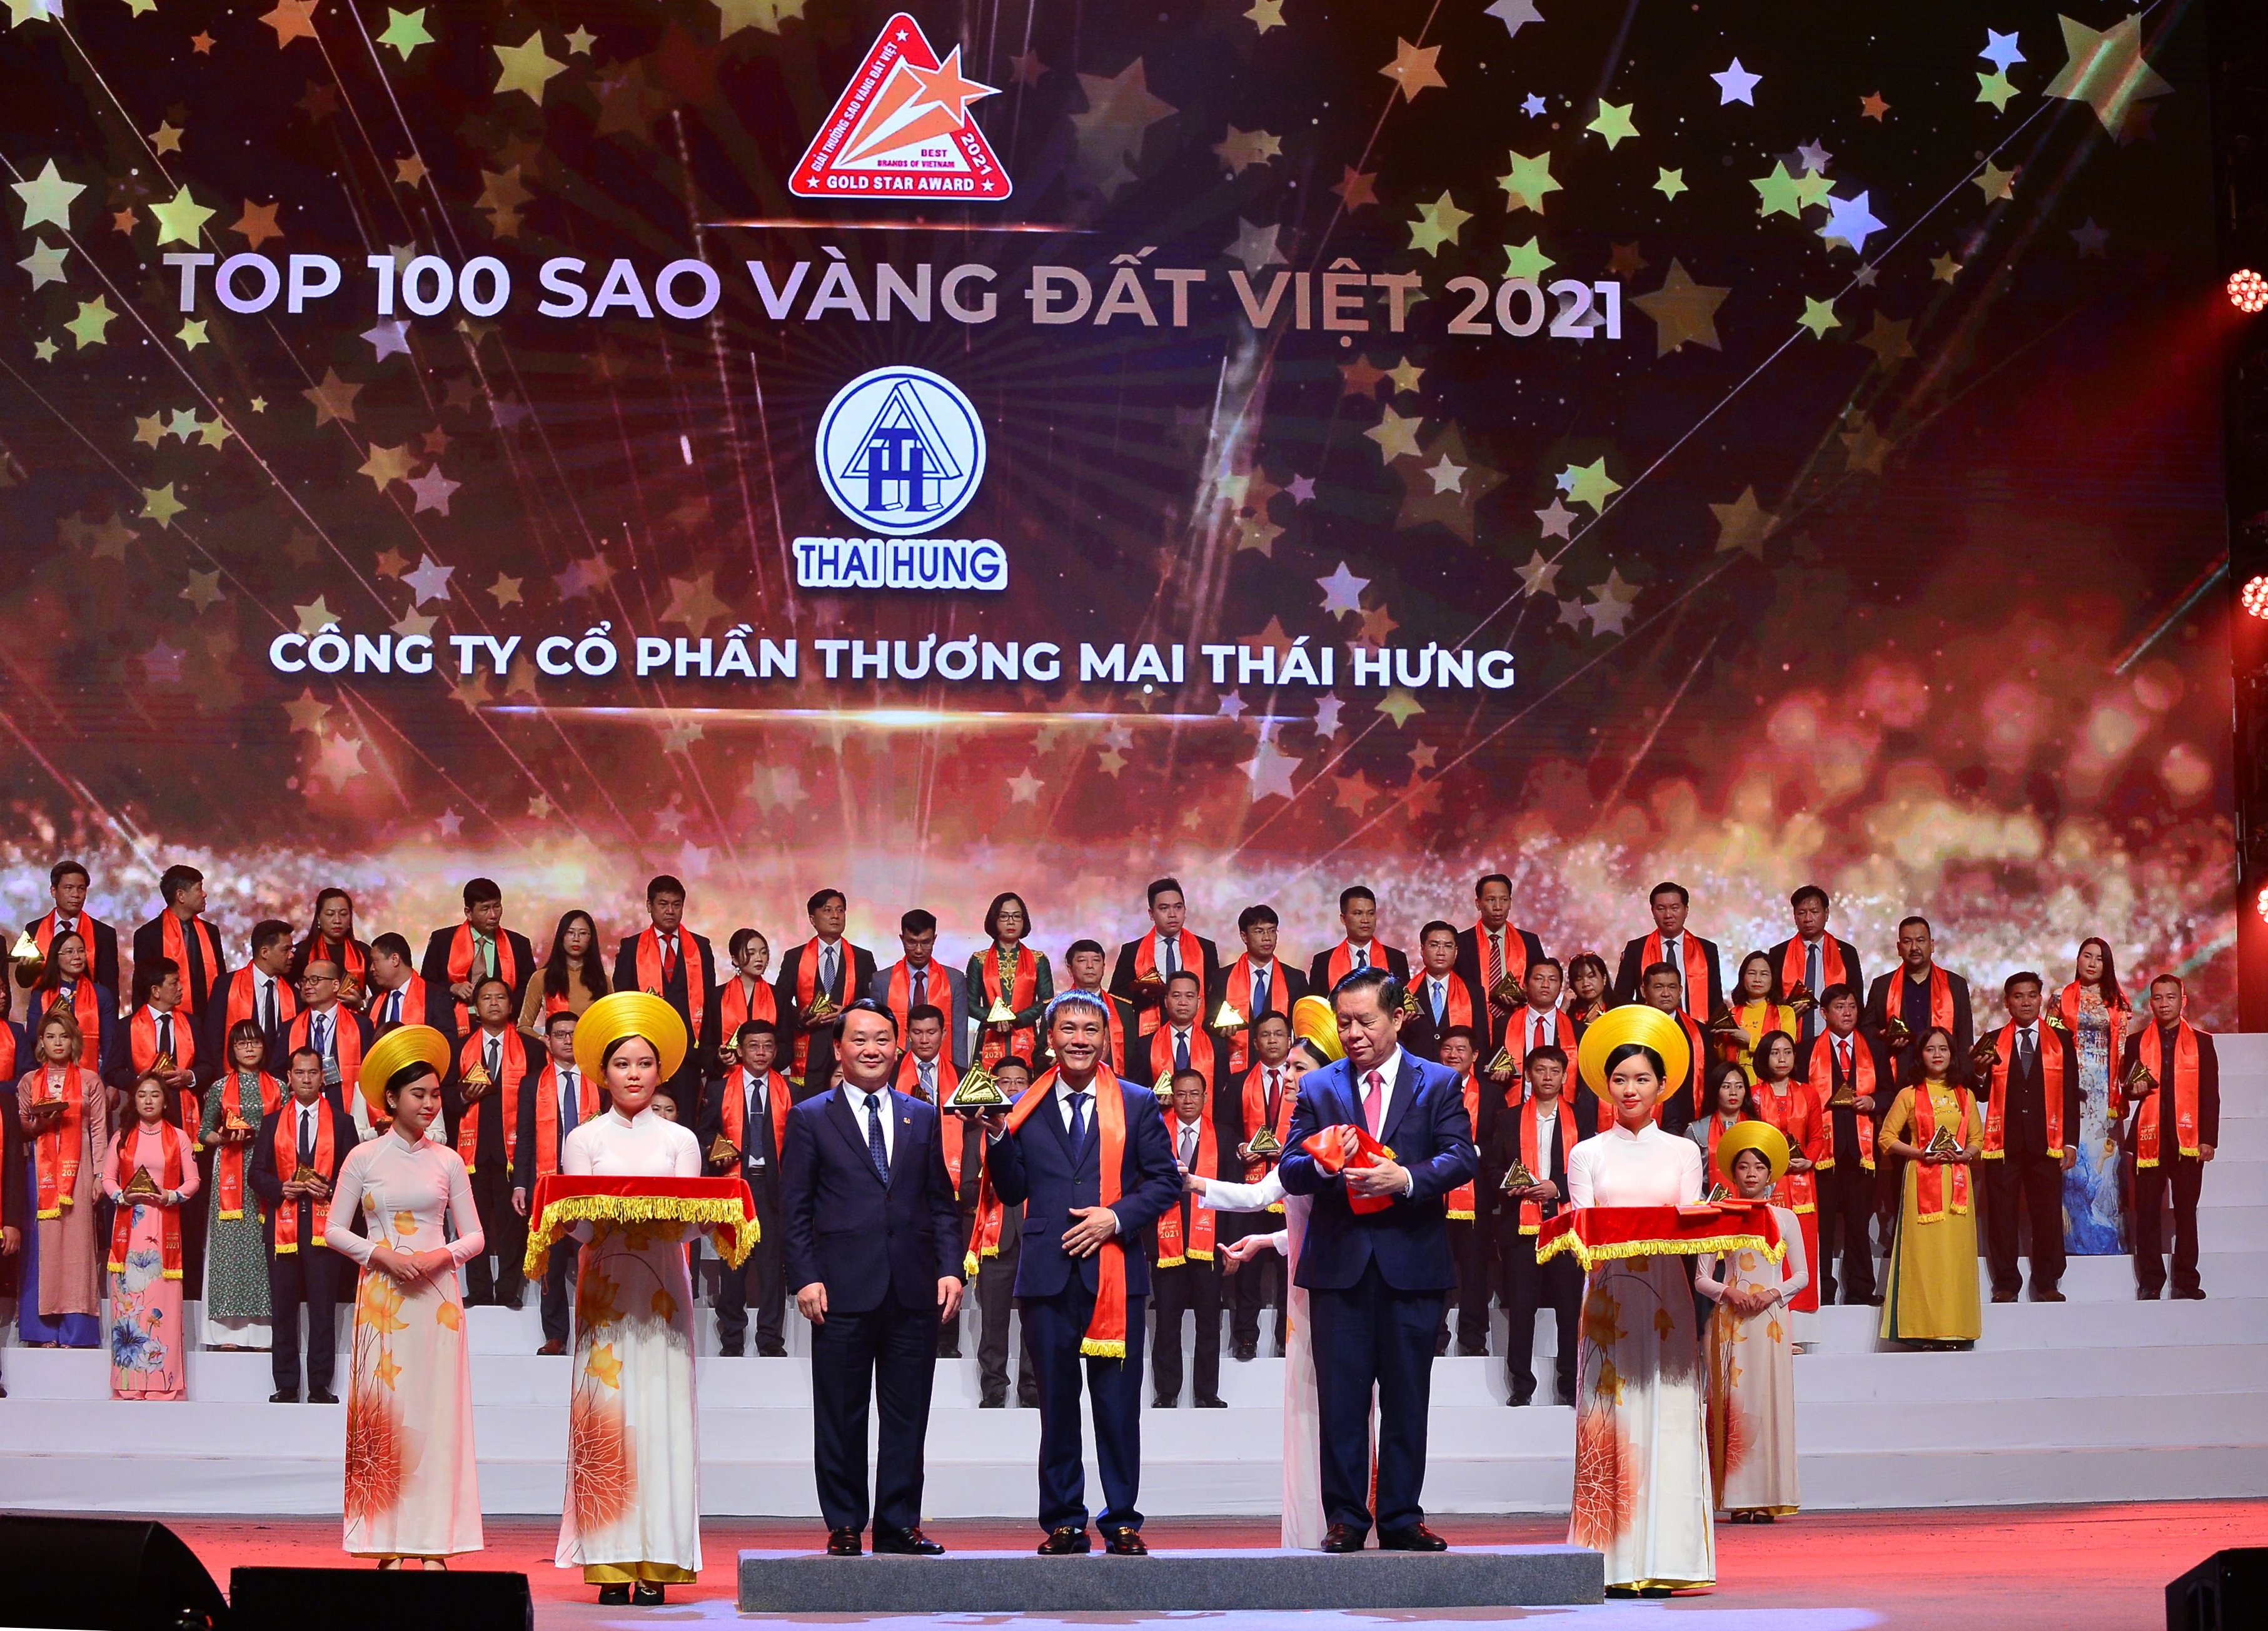 Công ty cổ phần Thương mại Thái Hưng, chủ đầu tư dự án Thái Hưng Crown Villas vinh dự nhận giải thưởng Sao vàng Đất Việt.